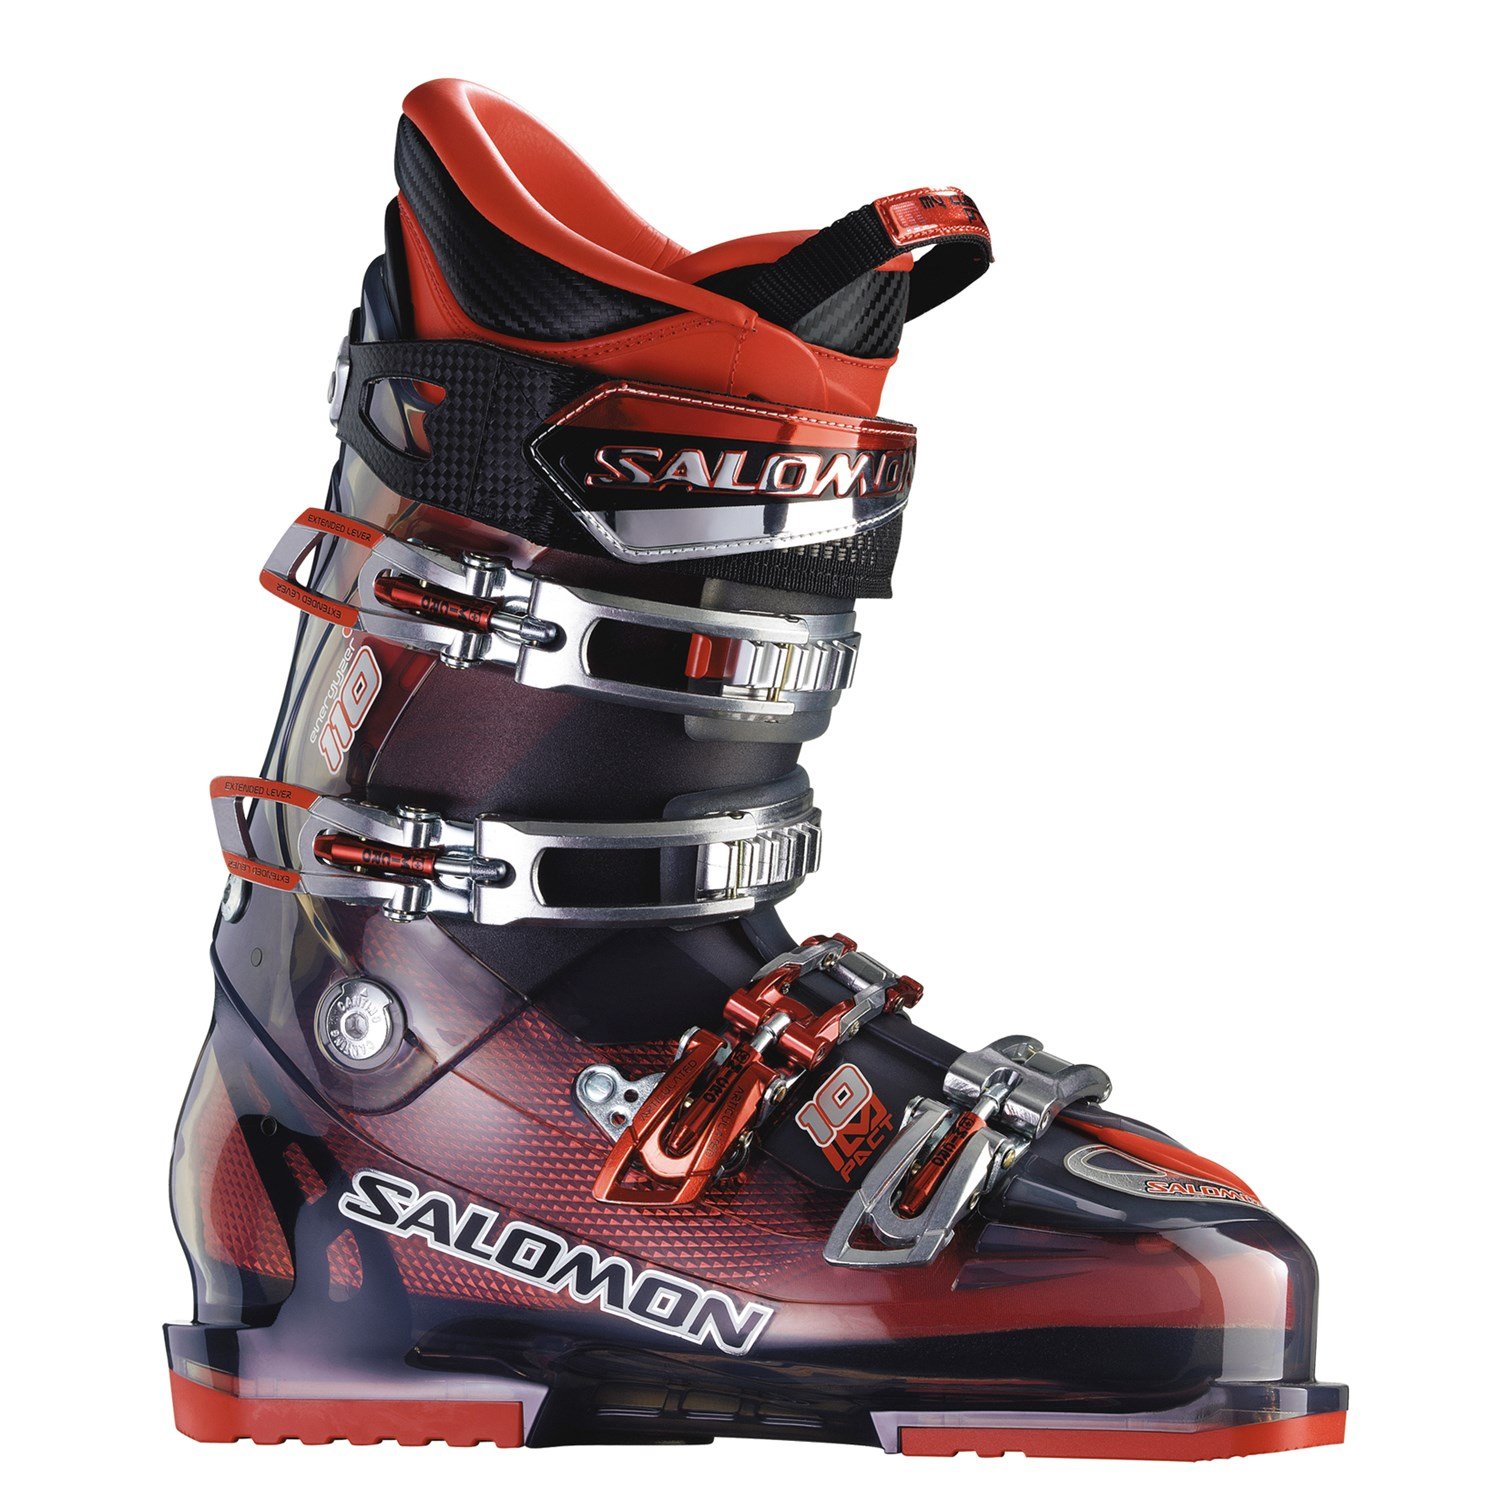 Salomon Impact 10 Ski Boots 2009 | evo